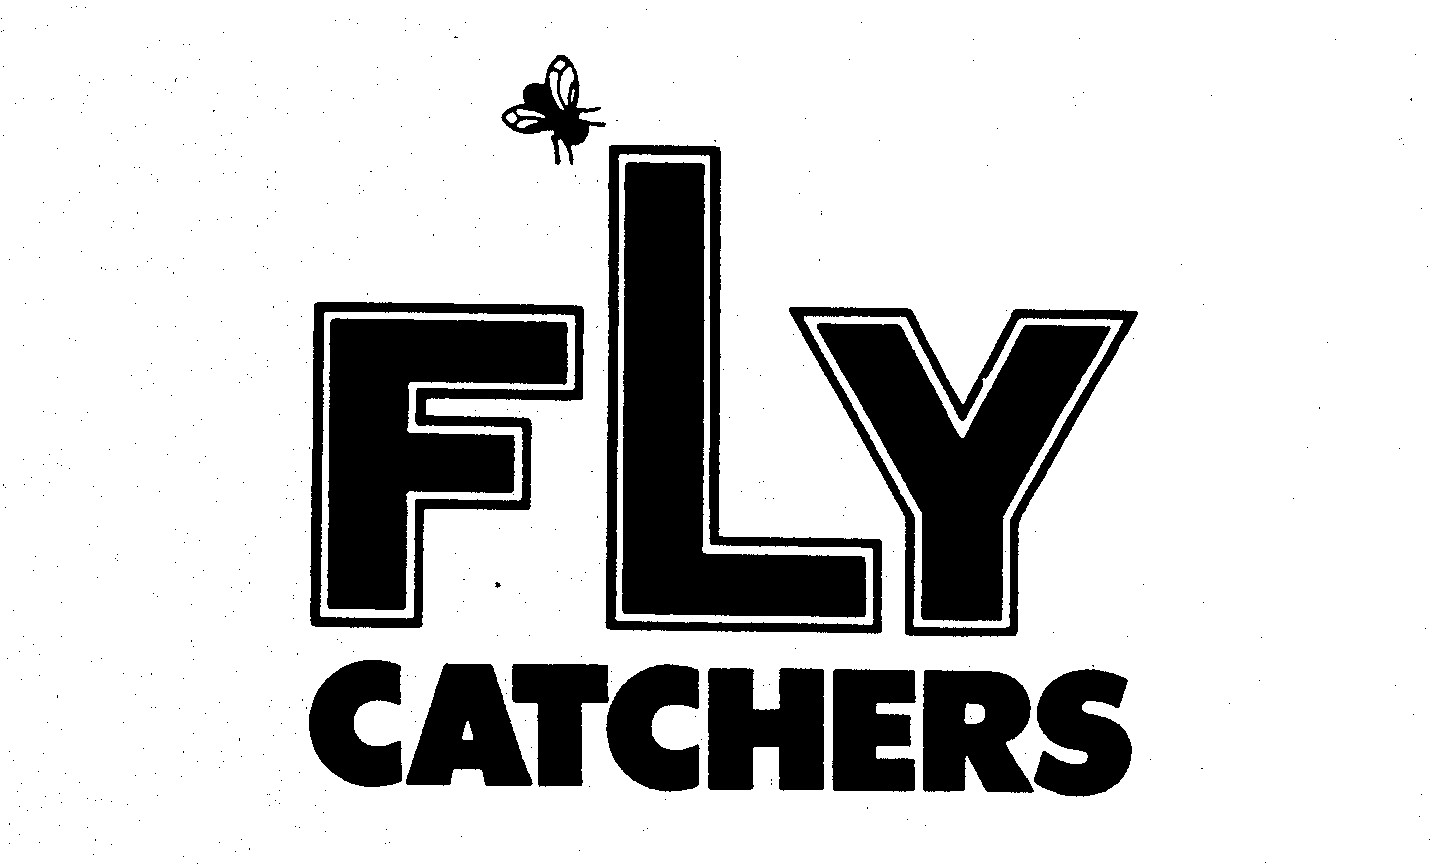  FLY CATCHERS